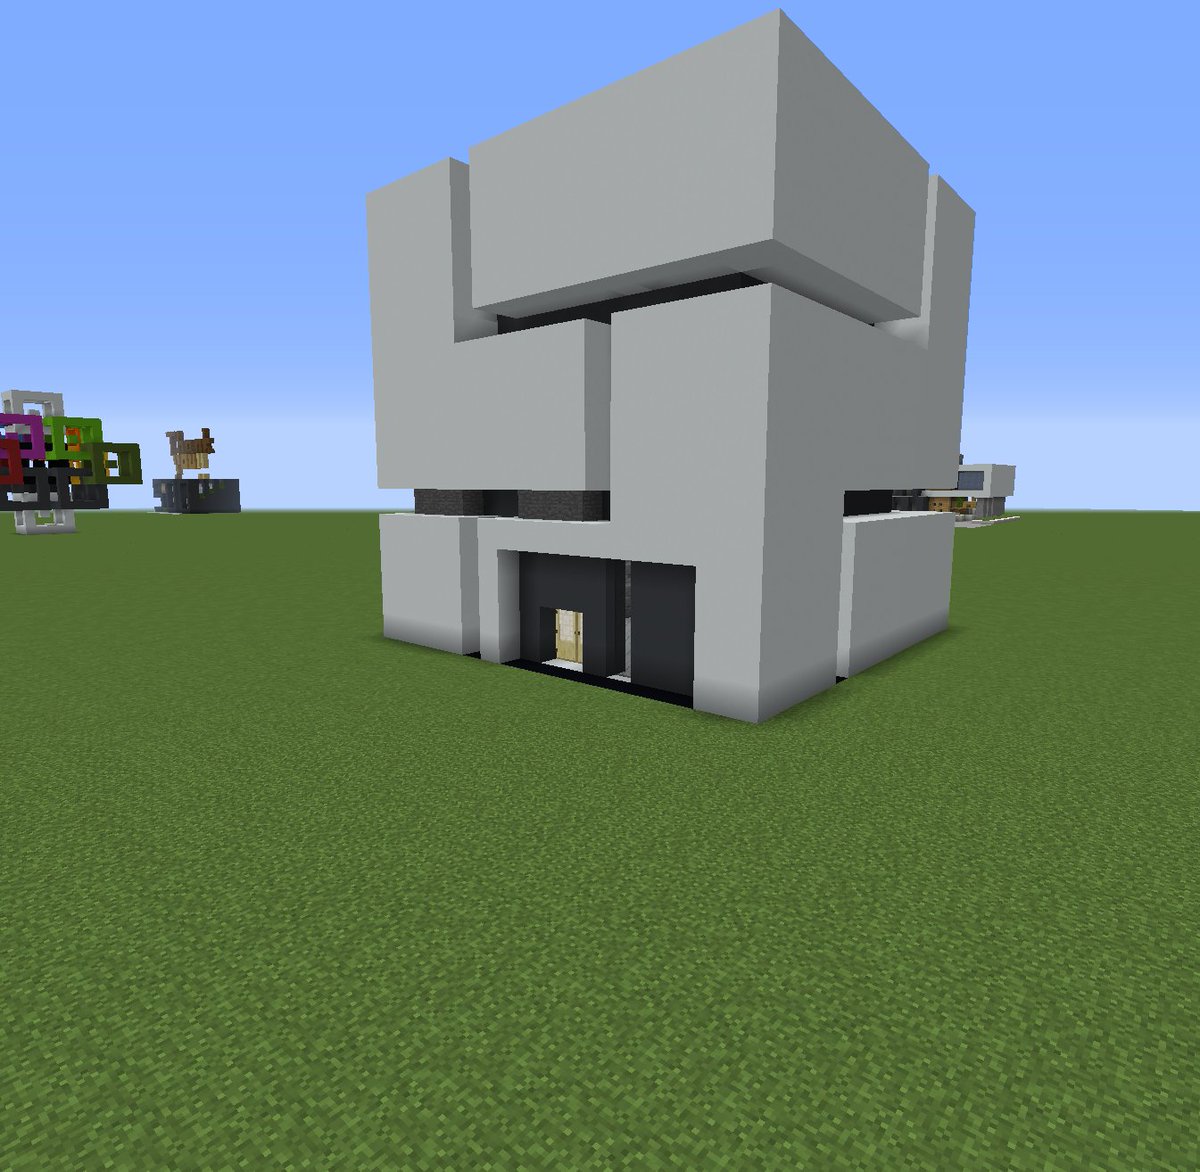 Fram Minecraft現代建築 お久しぶりです ネタ建築です 以前六角形の家のリクエストを頂いて六角形の家を作ったわけですが よくよく見たら六面体でした というわけで立方体の家です 手抜きですが御許しを